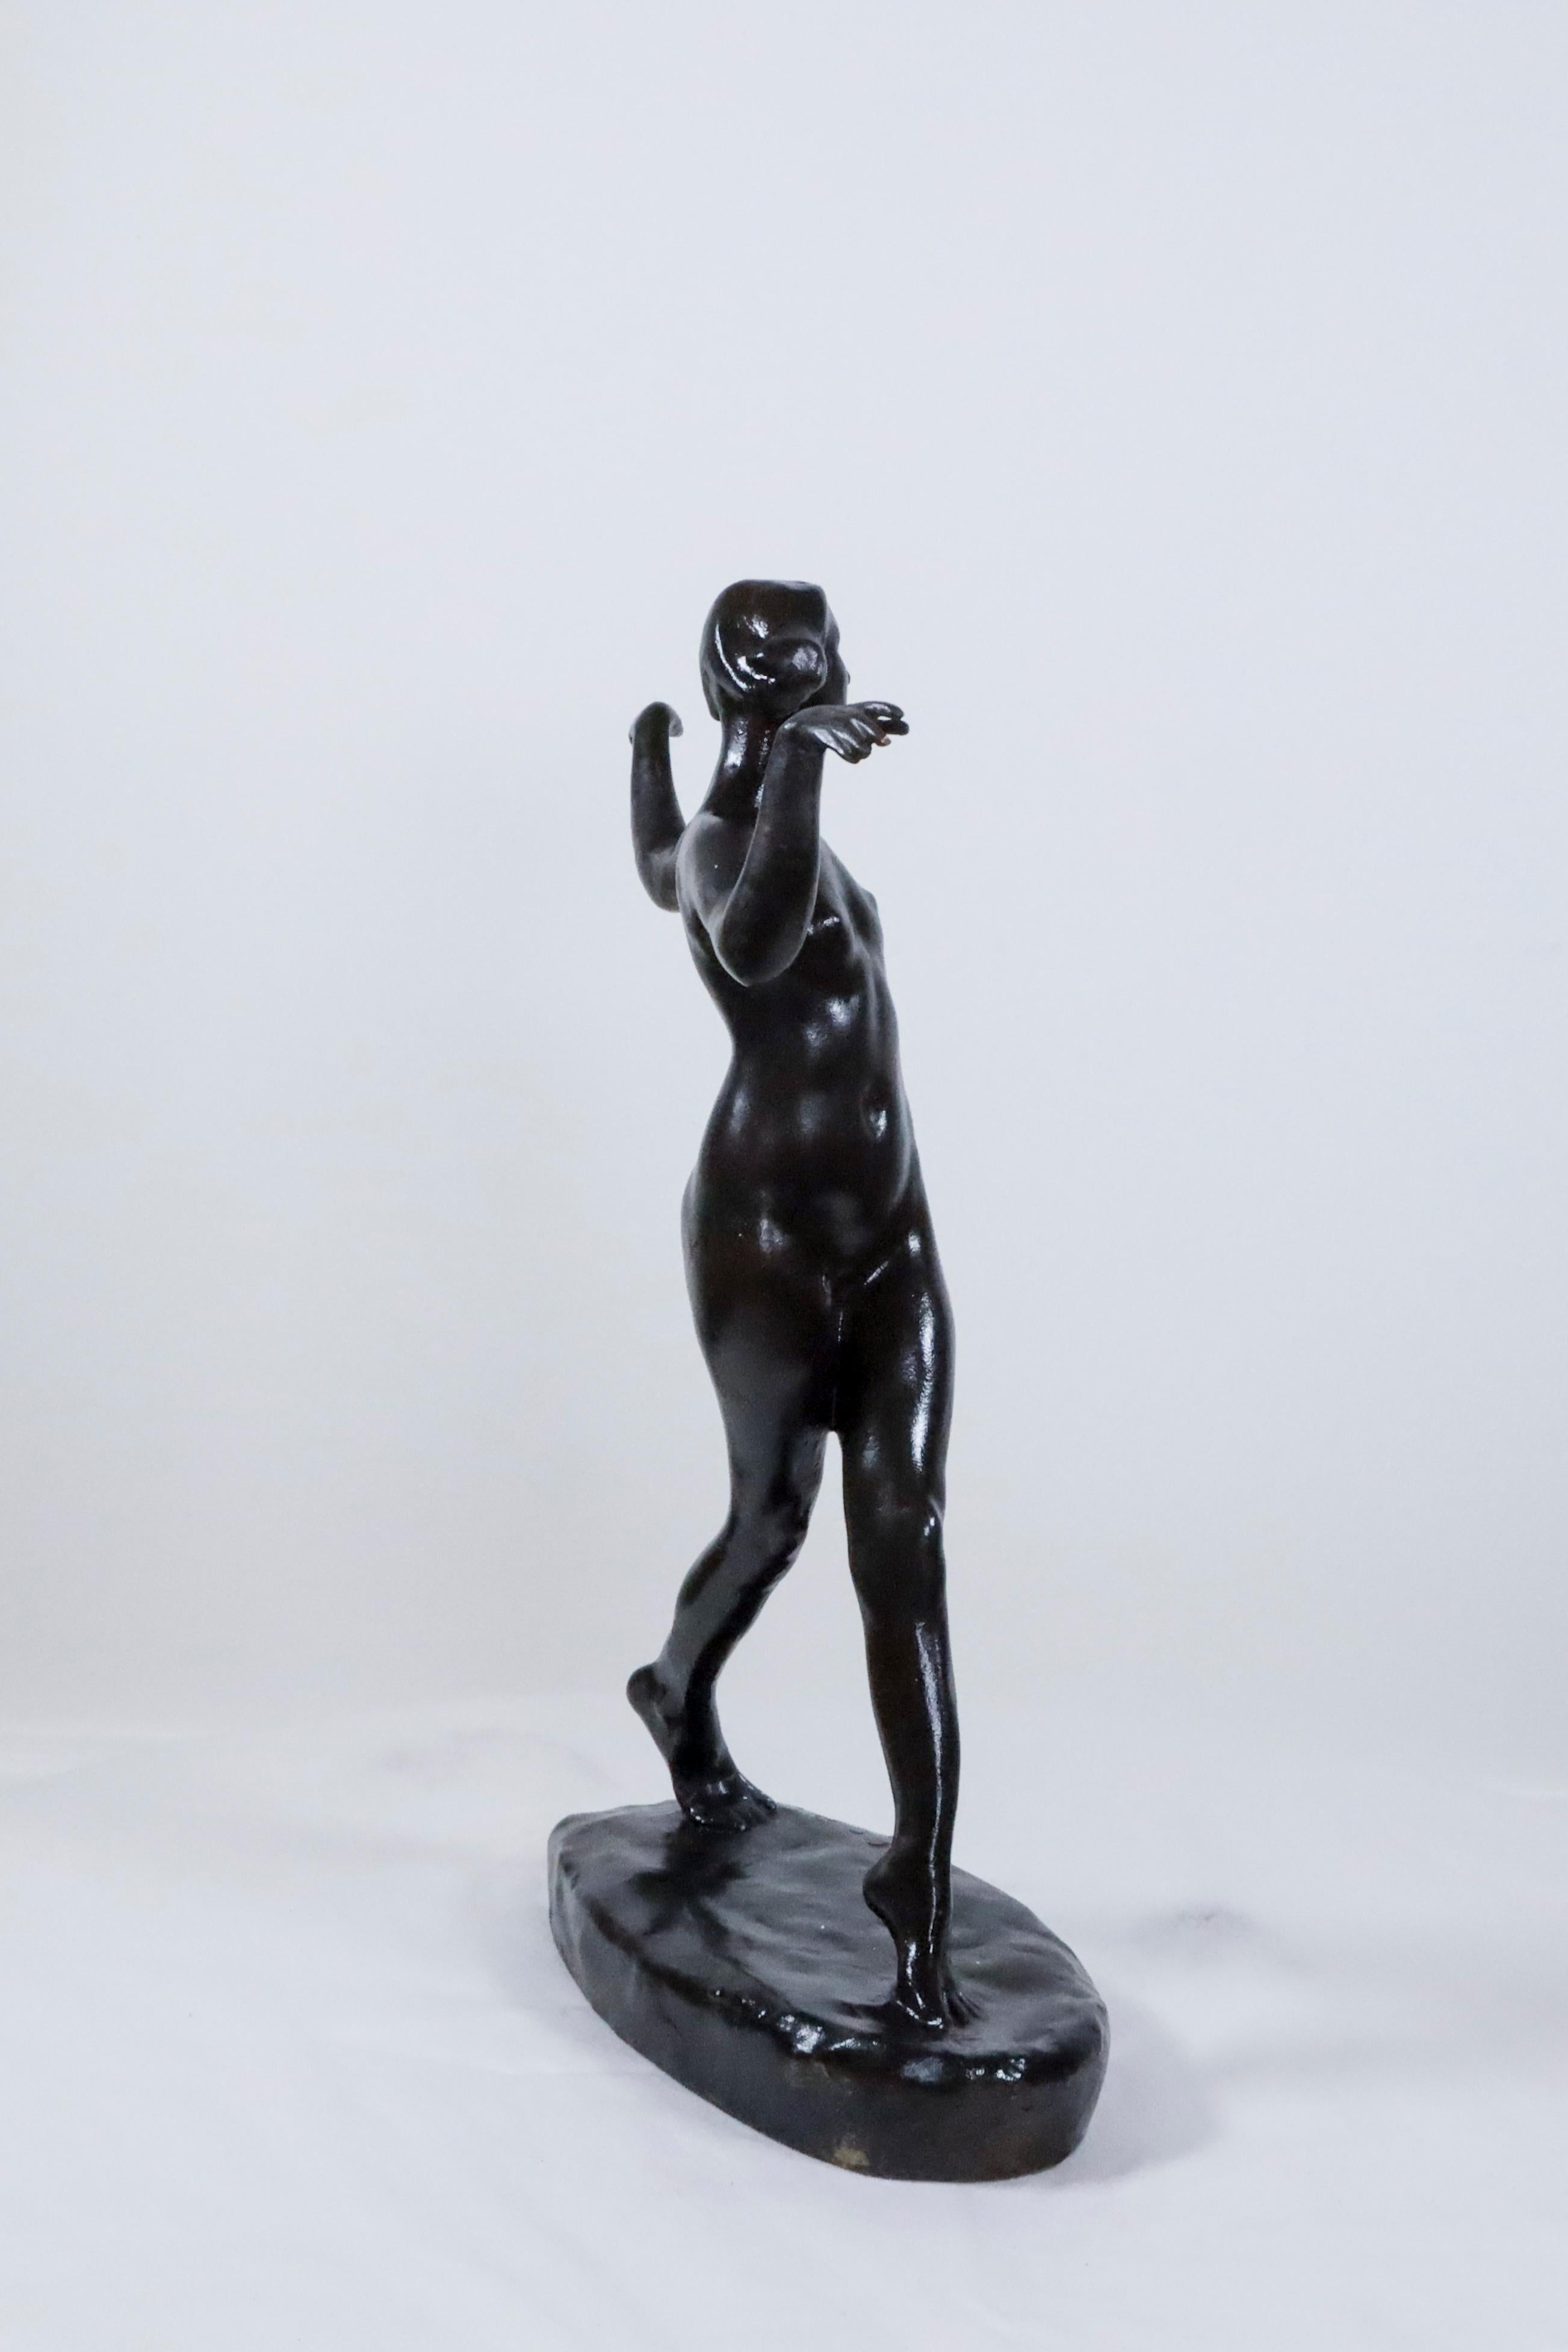 Dancing Nude Bronze de Charles Rumsey est l'une des nombreuses figures de femmes qu'il a représentées.  Il est généralement connu pour ses sculptures de chevaux, de joueurs de polo, d'animaux sauvages et de chiens, principalement parce qu'il était